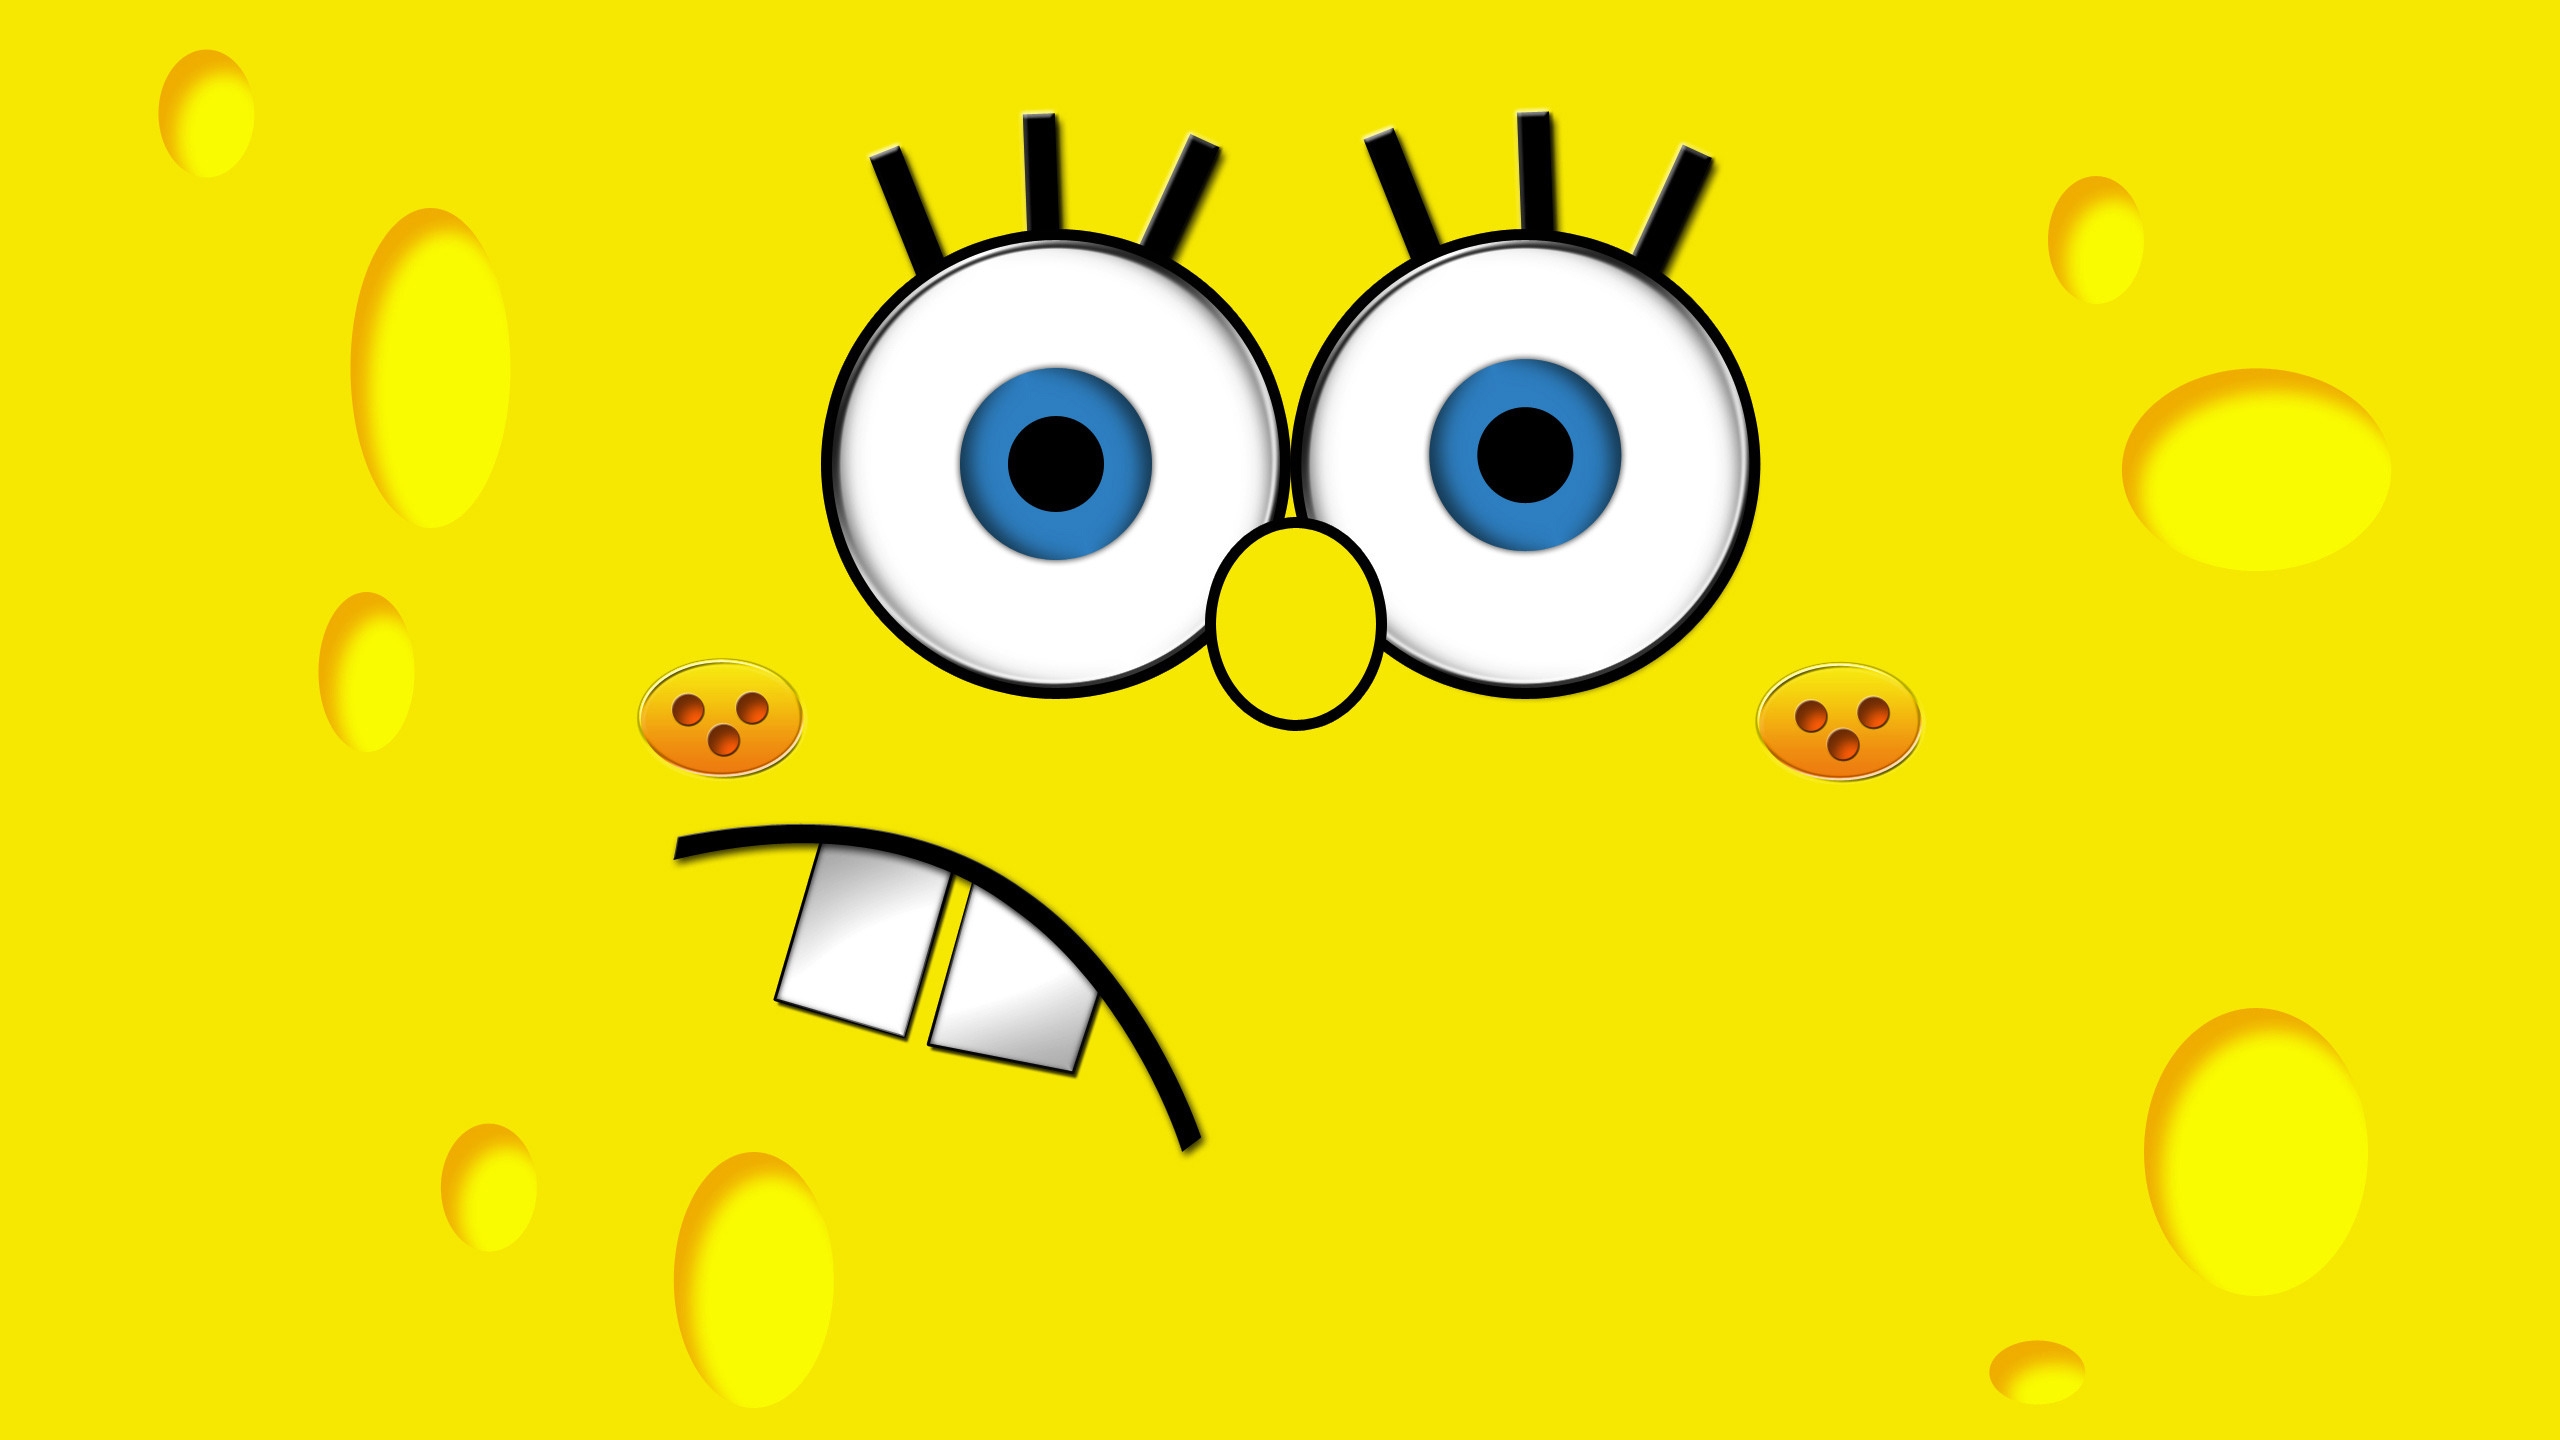 SpongeBob for 2560x1440 HDTV resolution